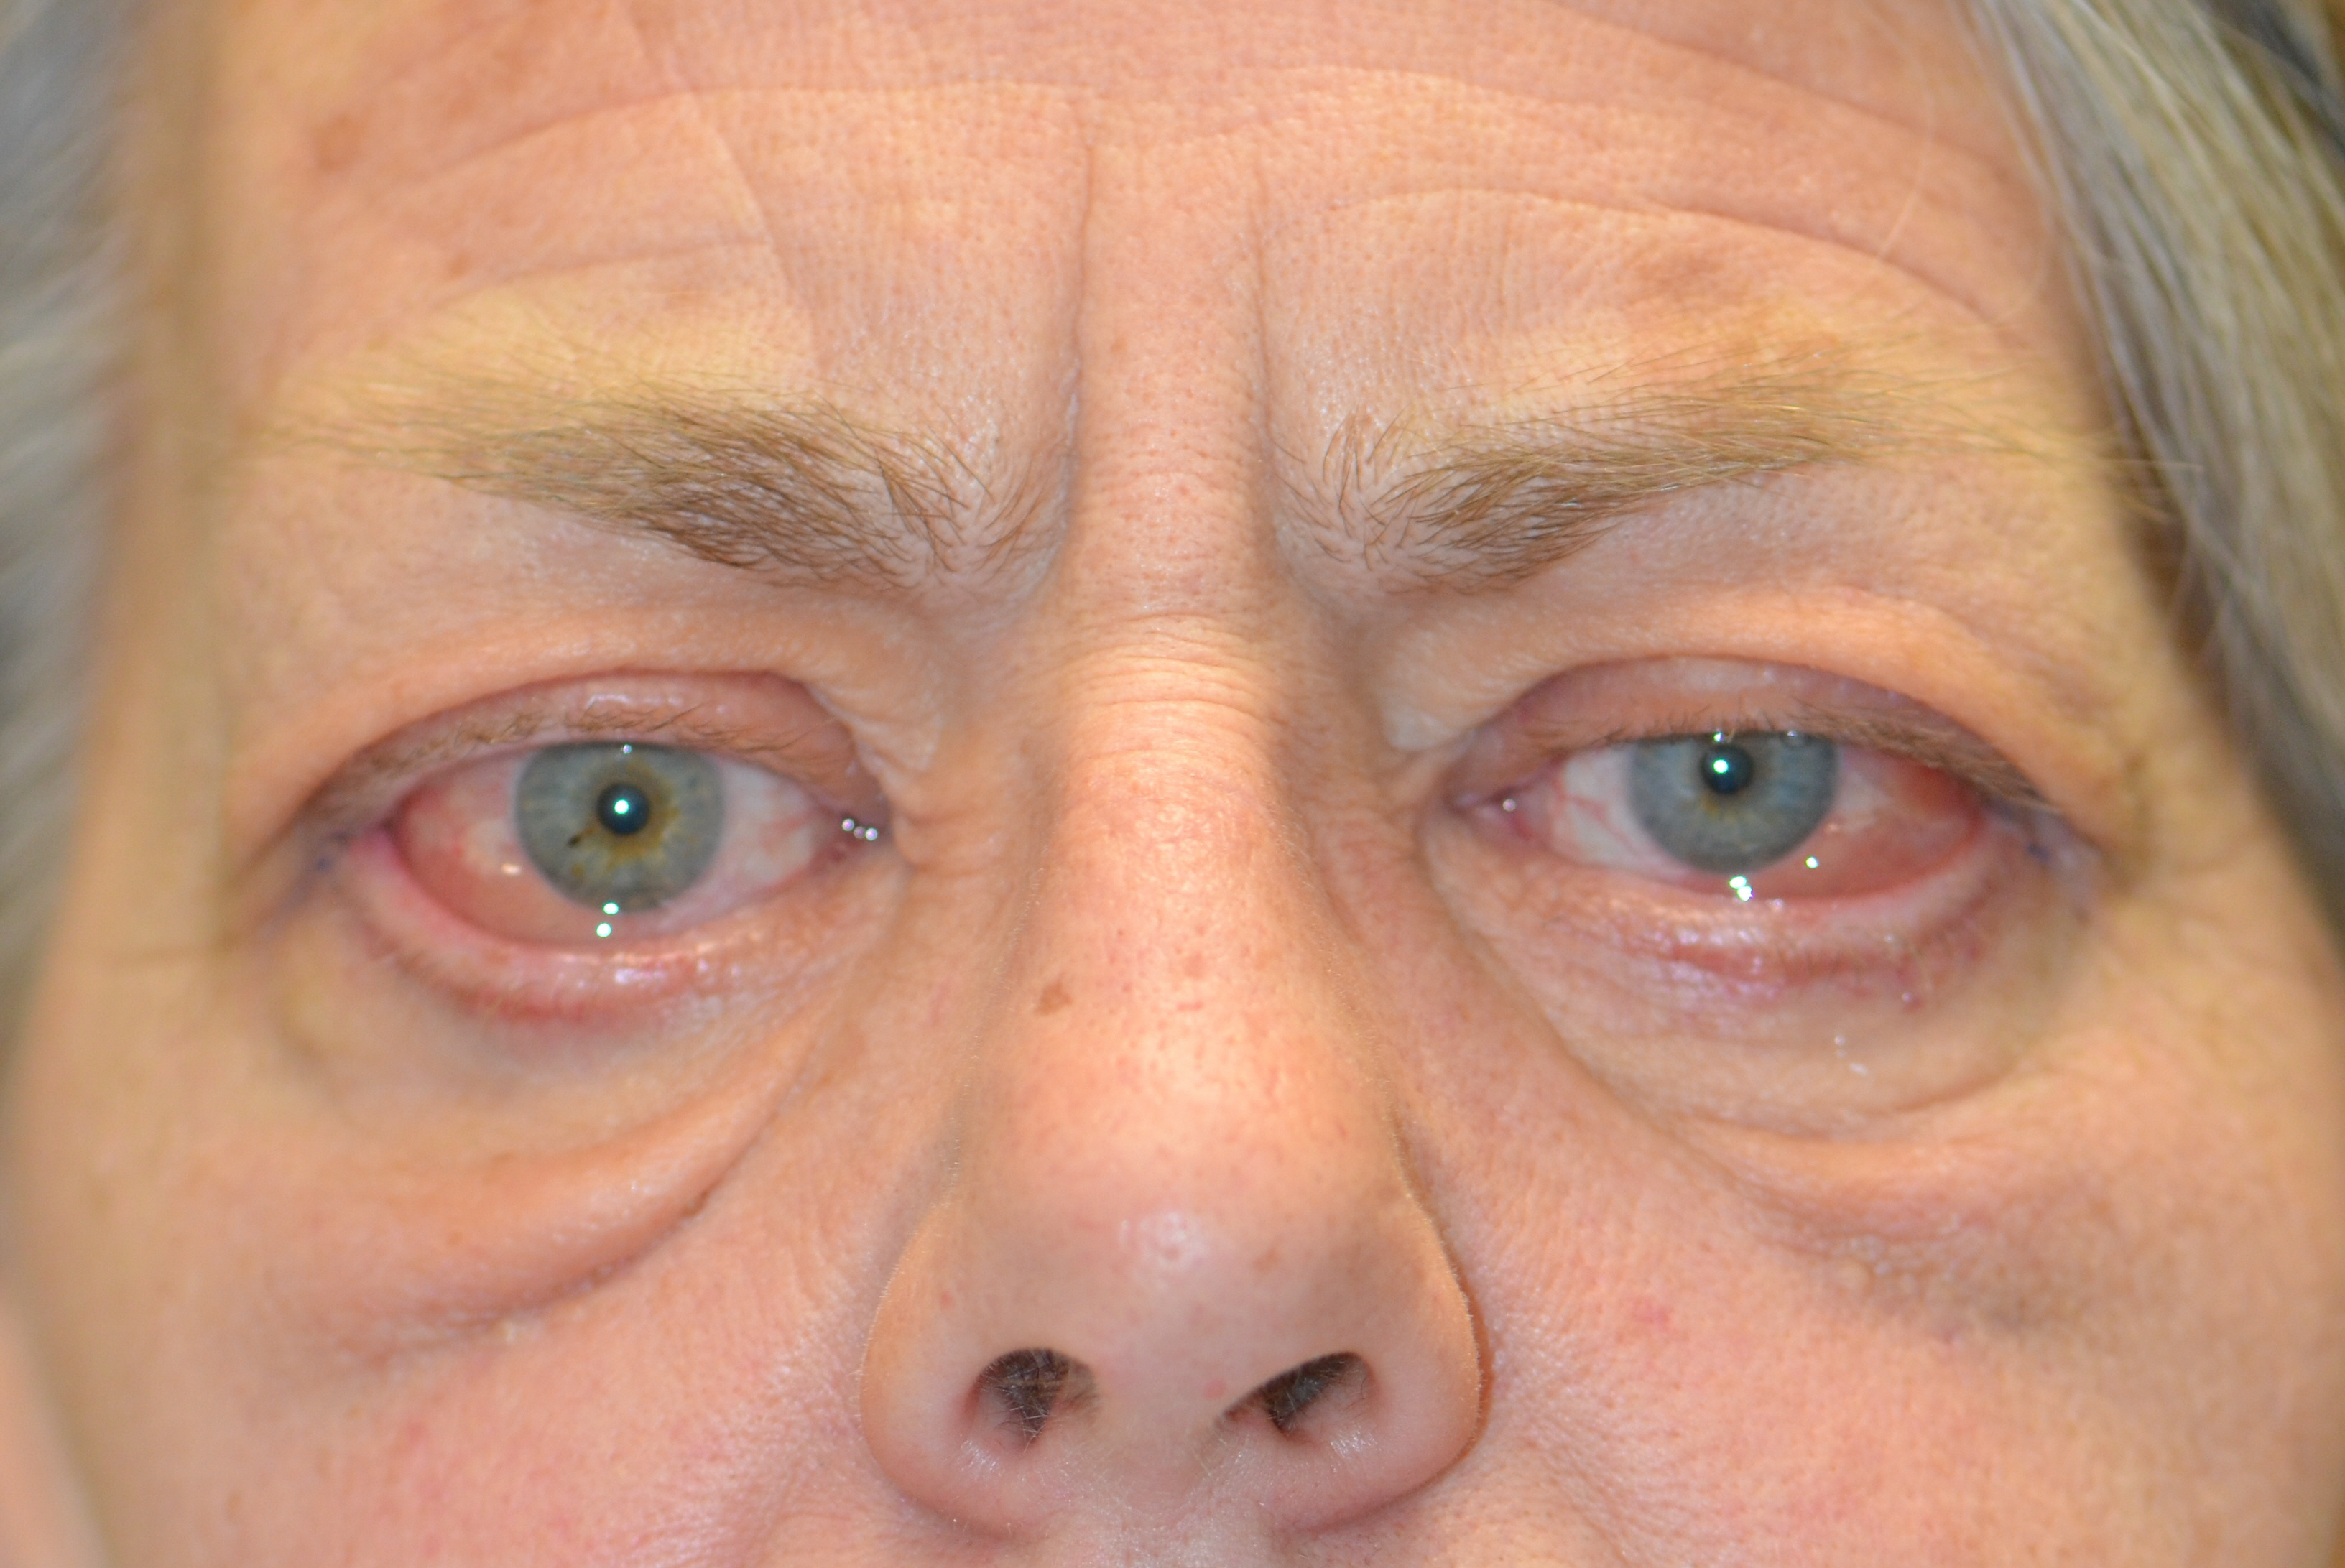 oedema around eye